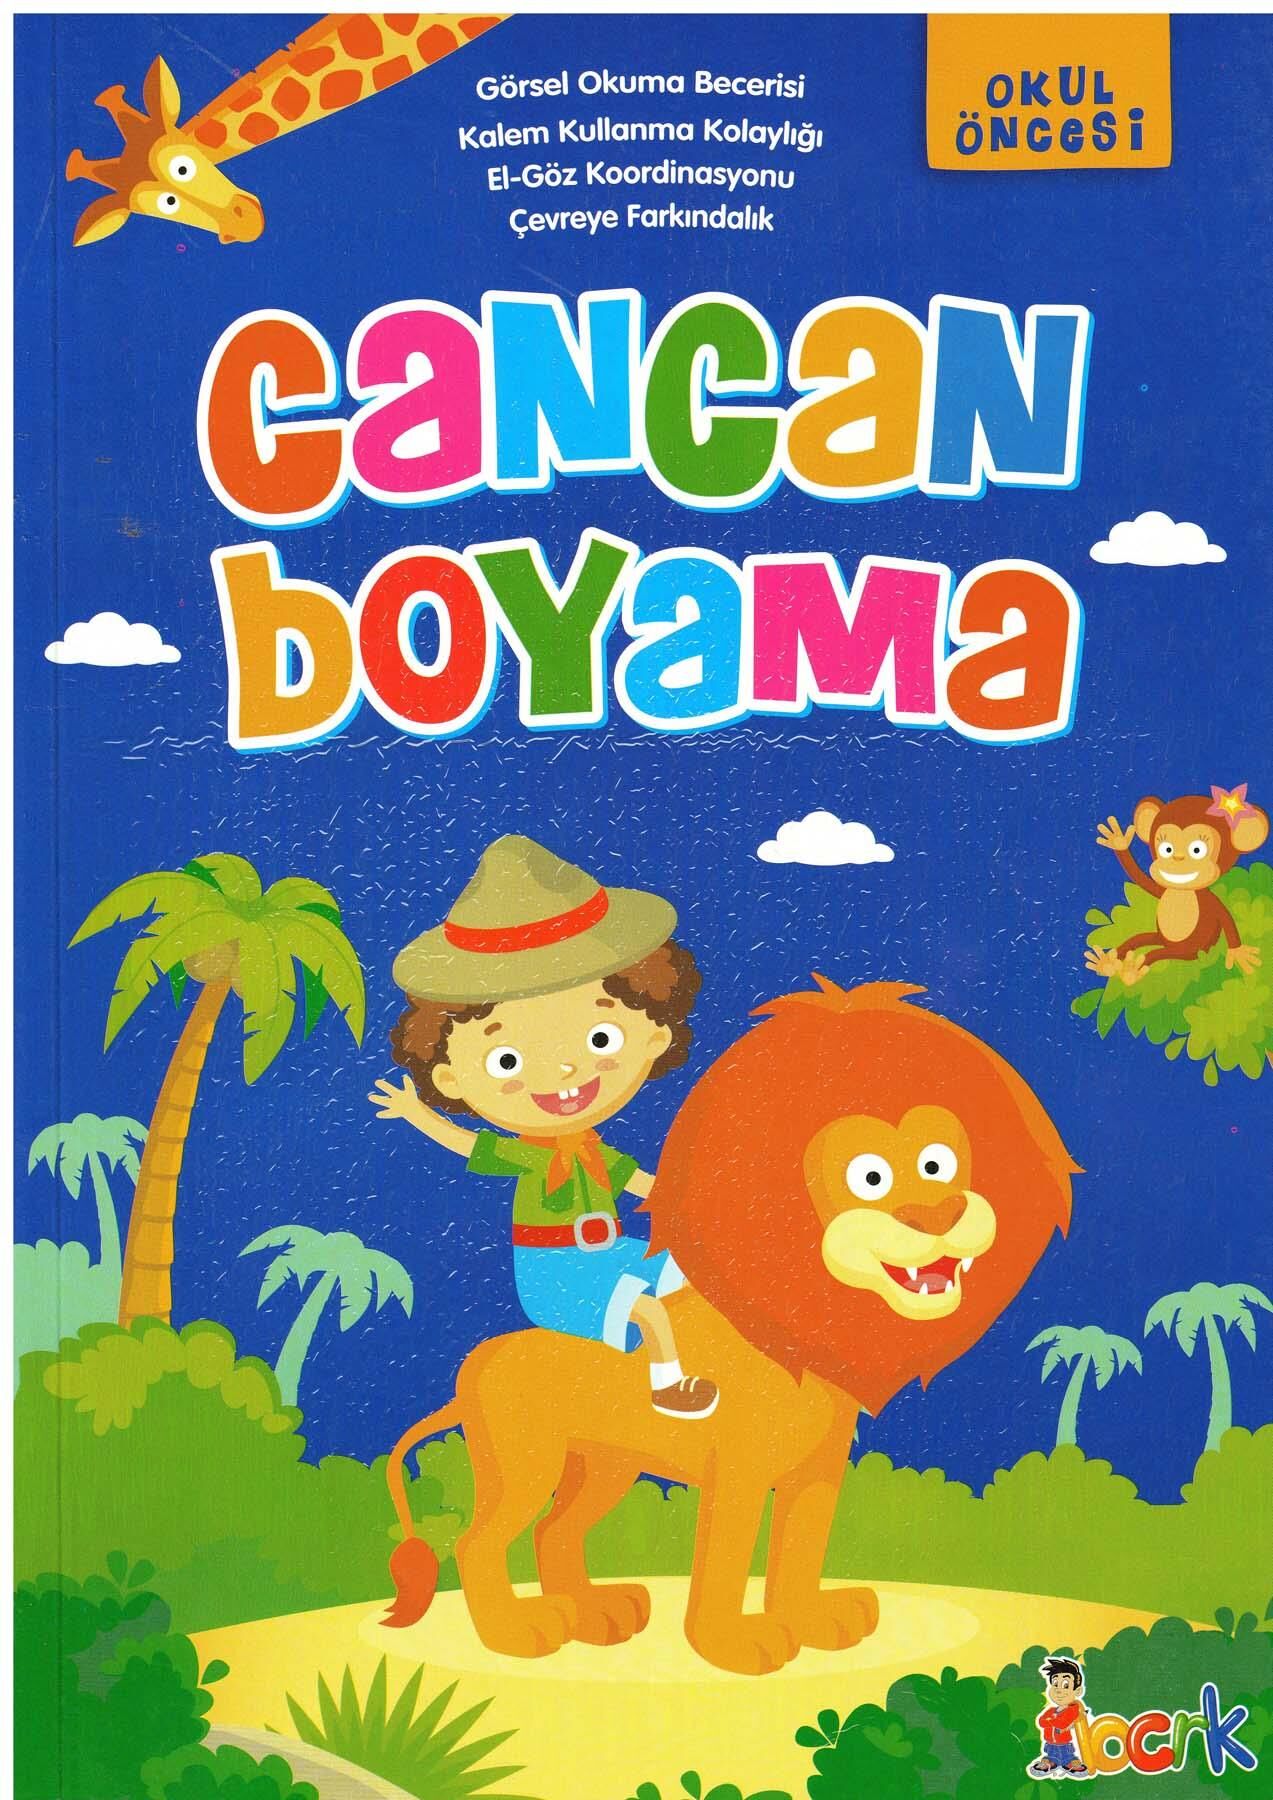 Cancan Boyama - Okul Öncesi